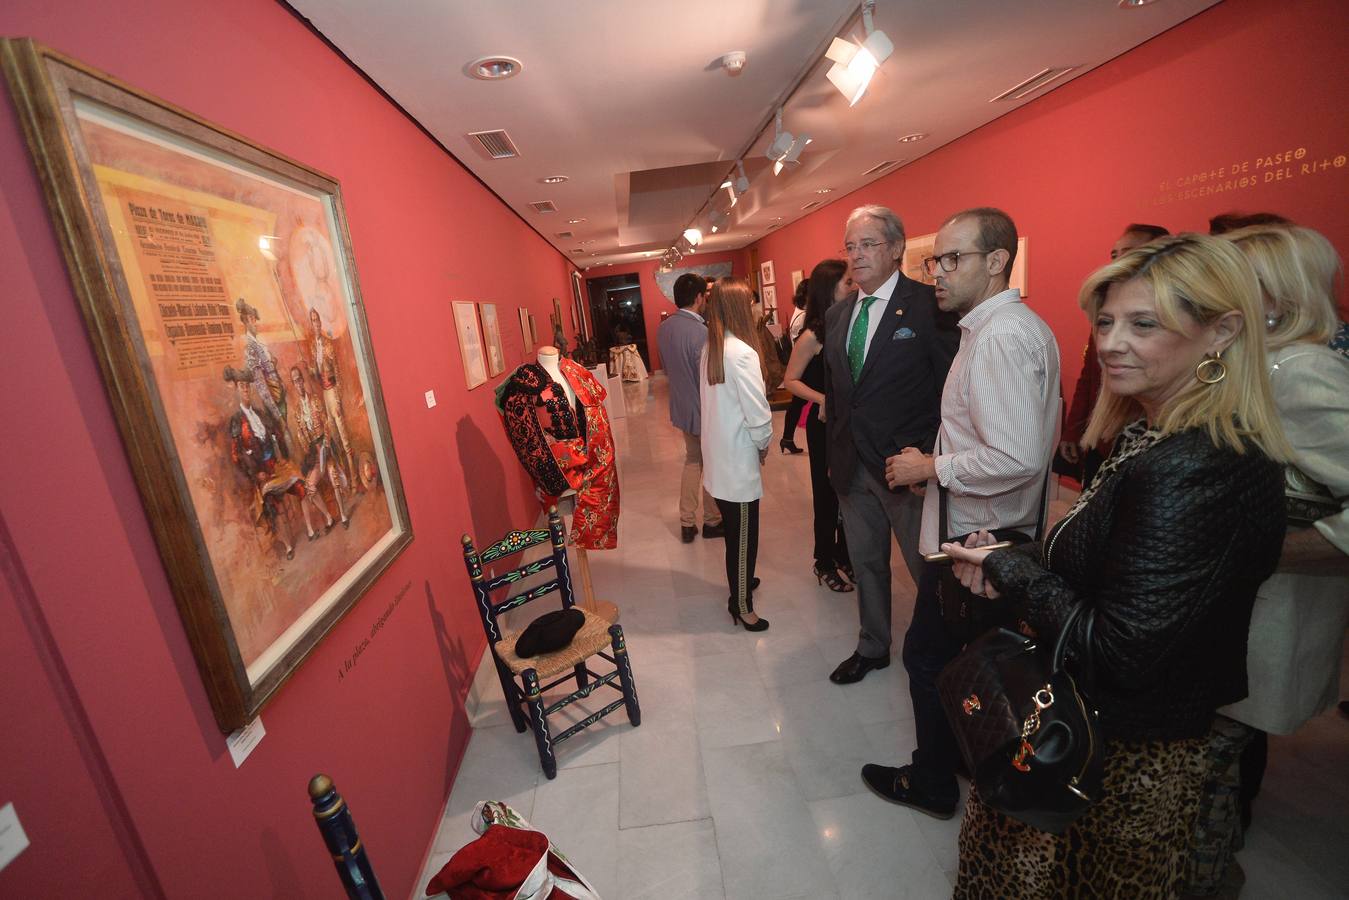 El Mubam acoge una muestra fotográfica de Roberto Kallmeyer y el Museo de la Ciudad de Murcia una serie de capotes de paseo